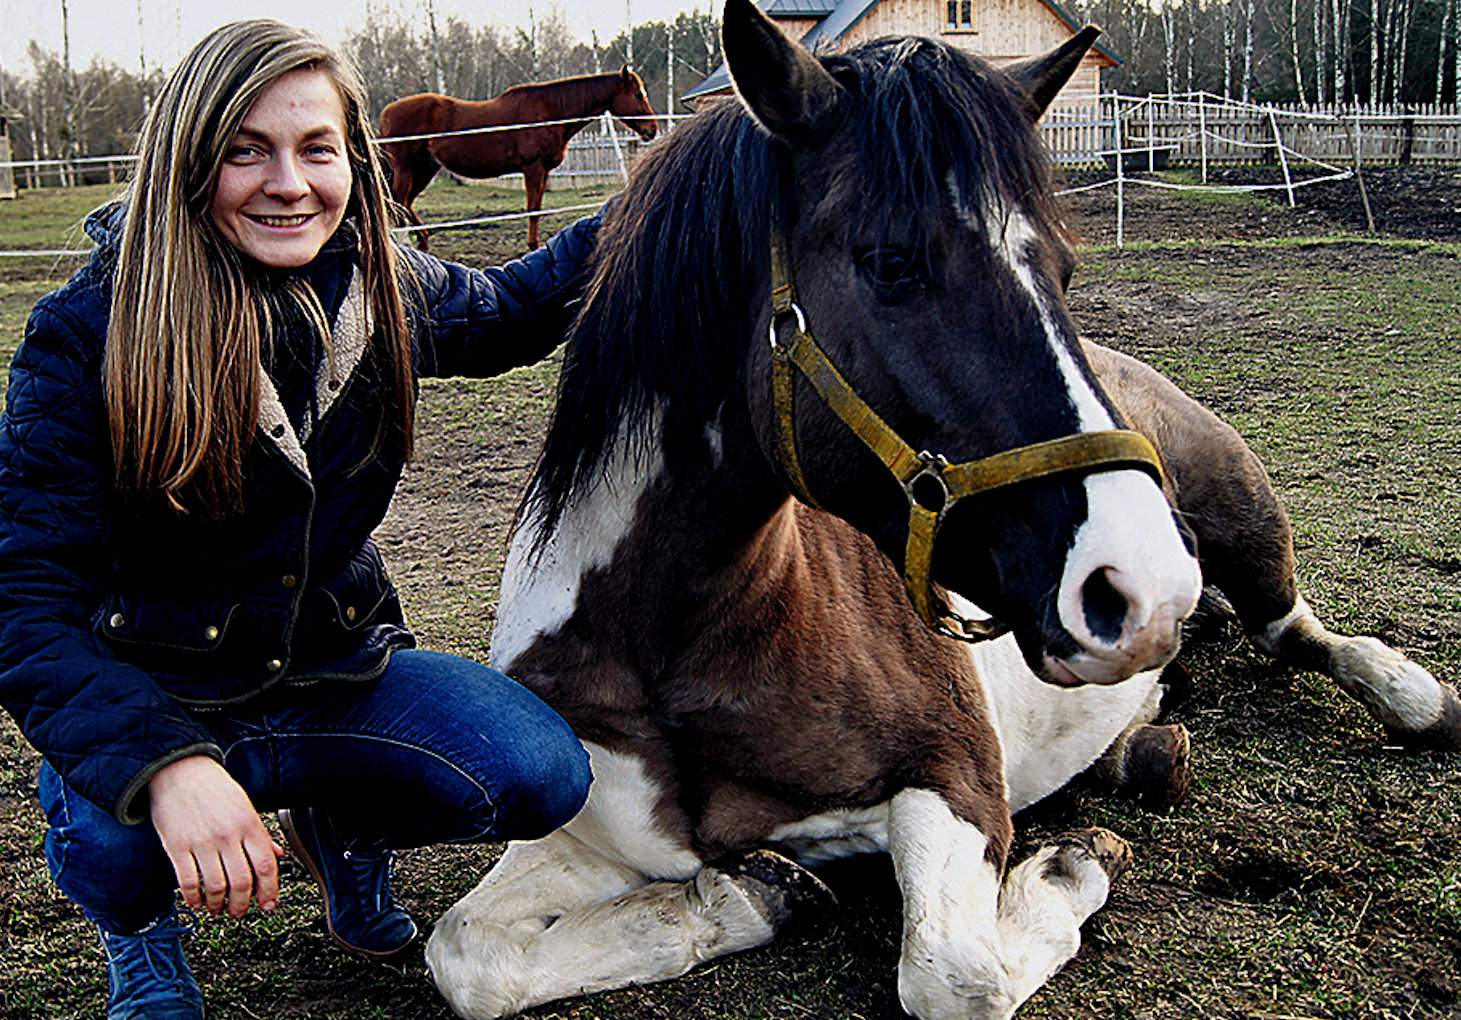 Praca z końmi nauczyła mnie cierpliwości oraz pokory –  mówi Anna Sokólska